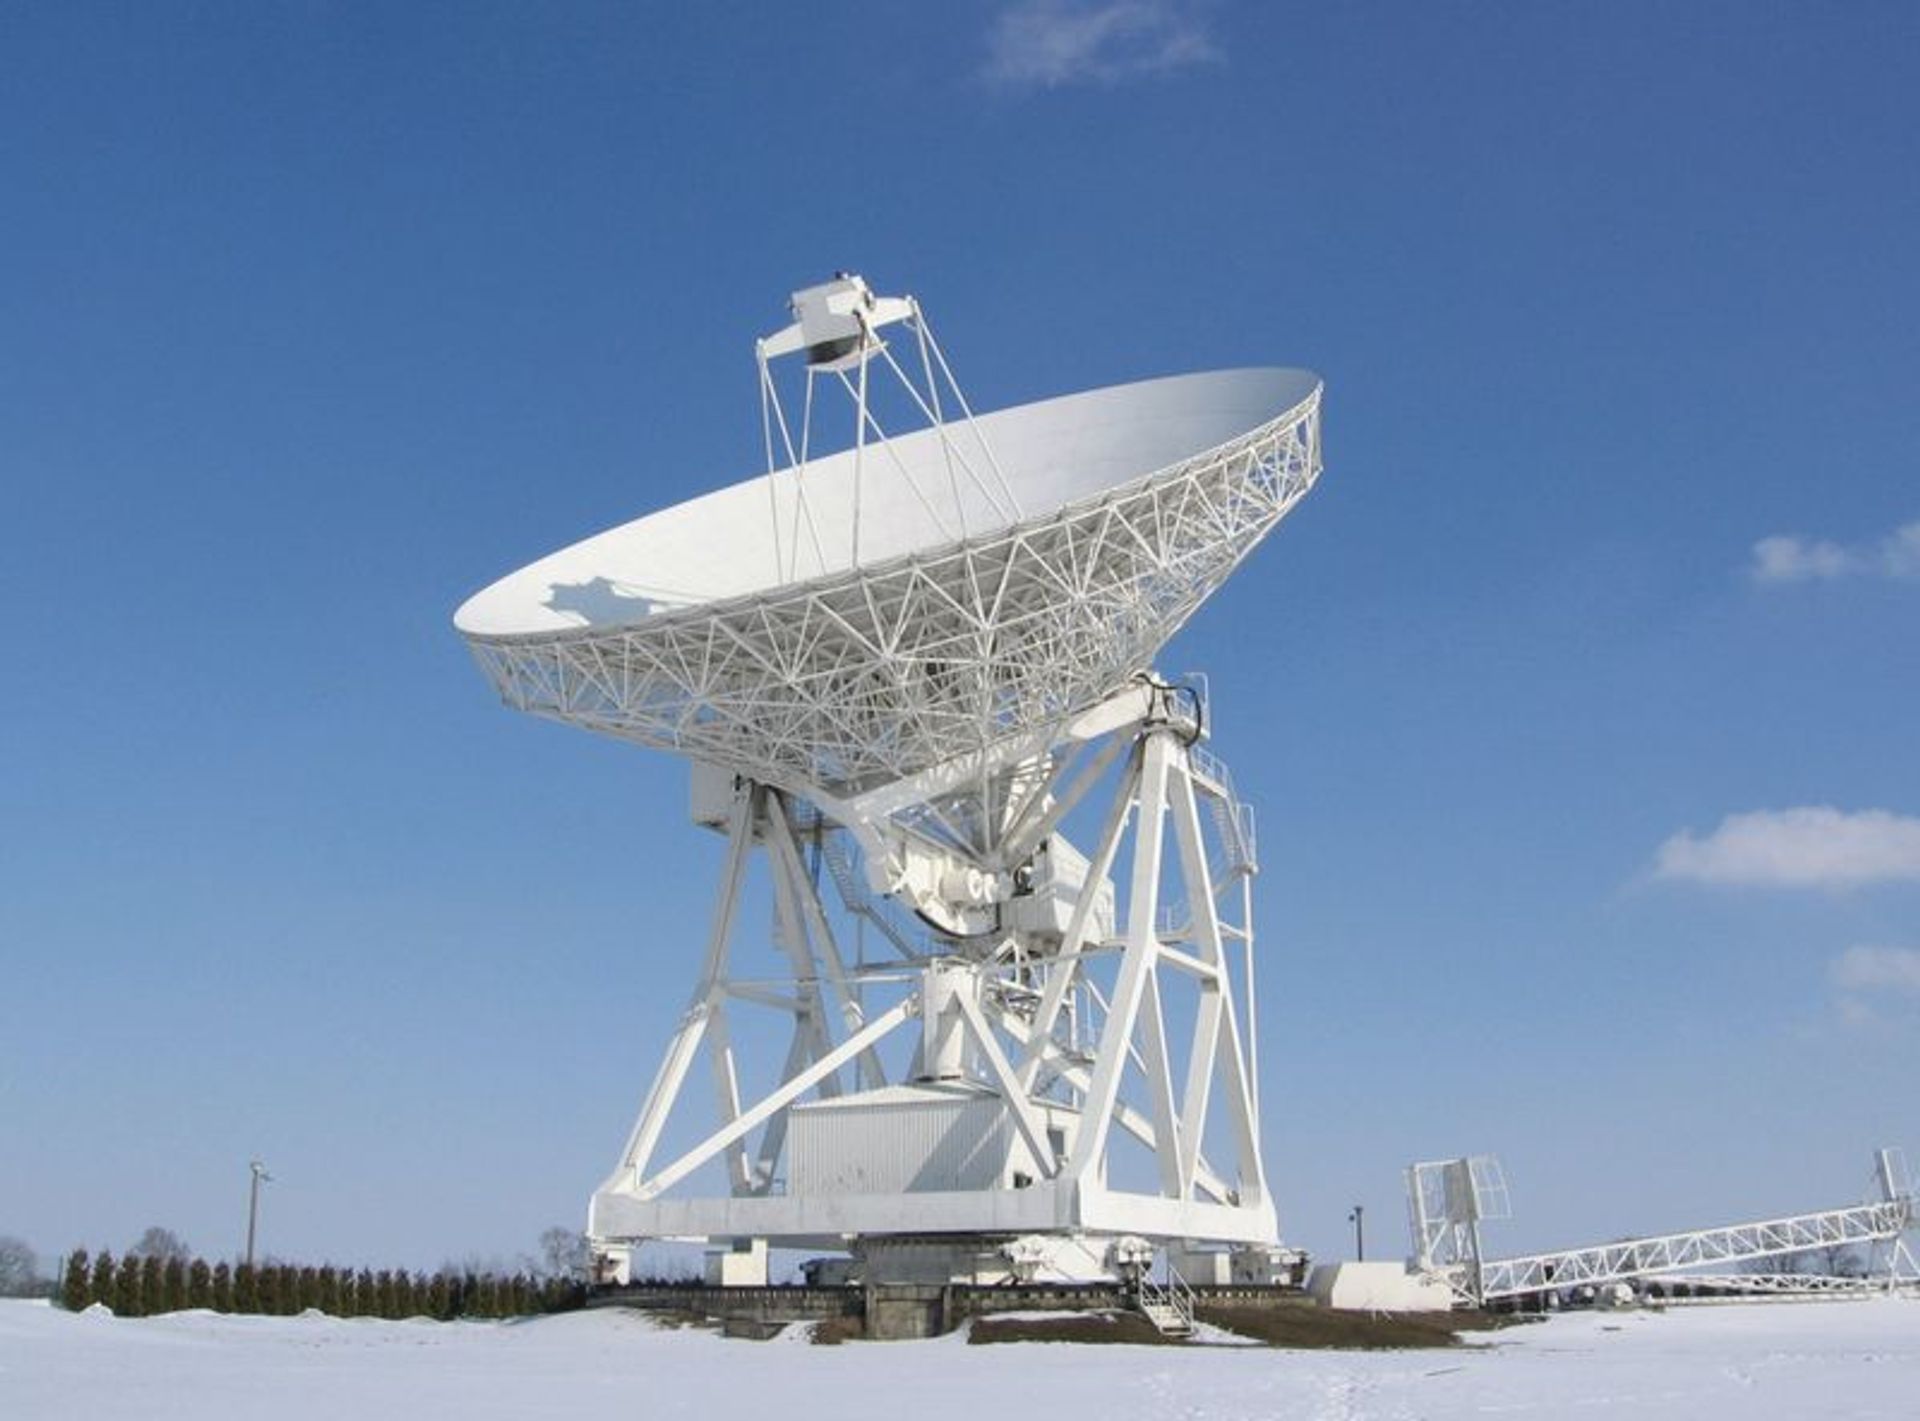  Krajowe Centrum Inżynierii Kosmicznej i radioteleskop "Hevelius"